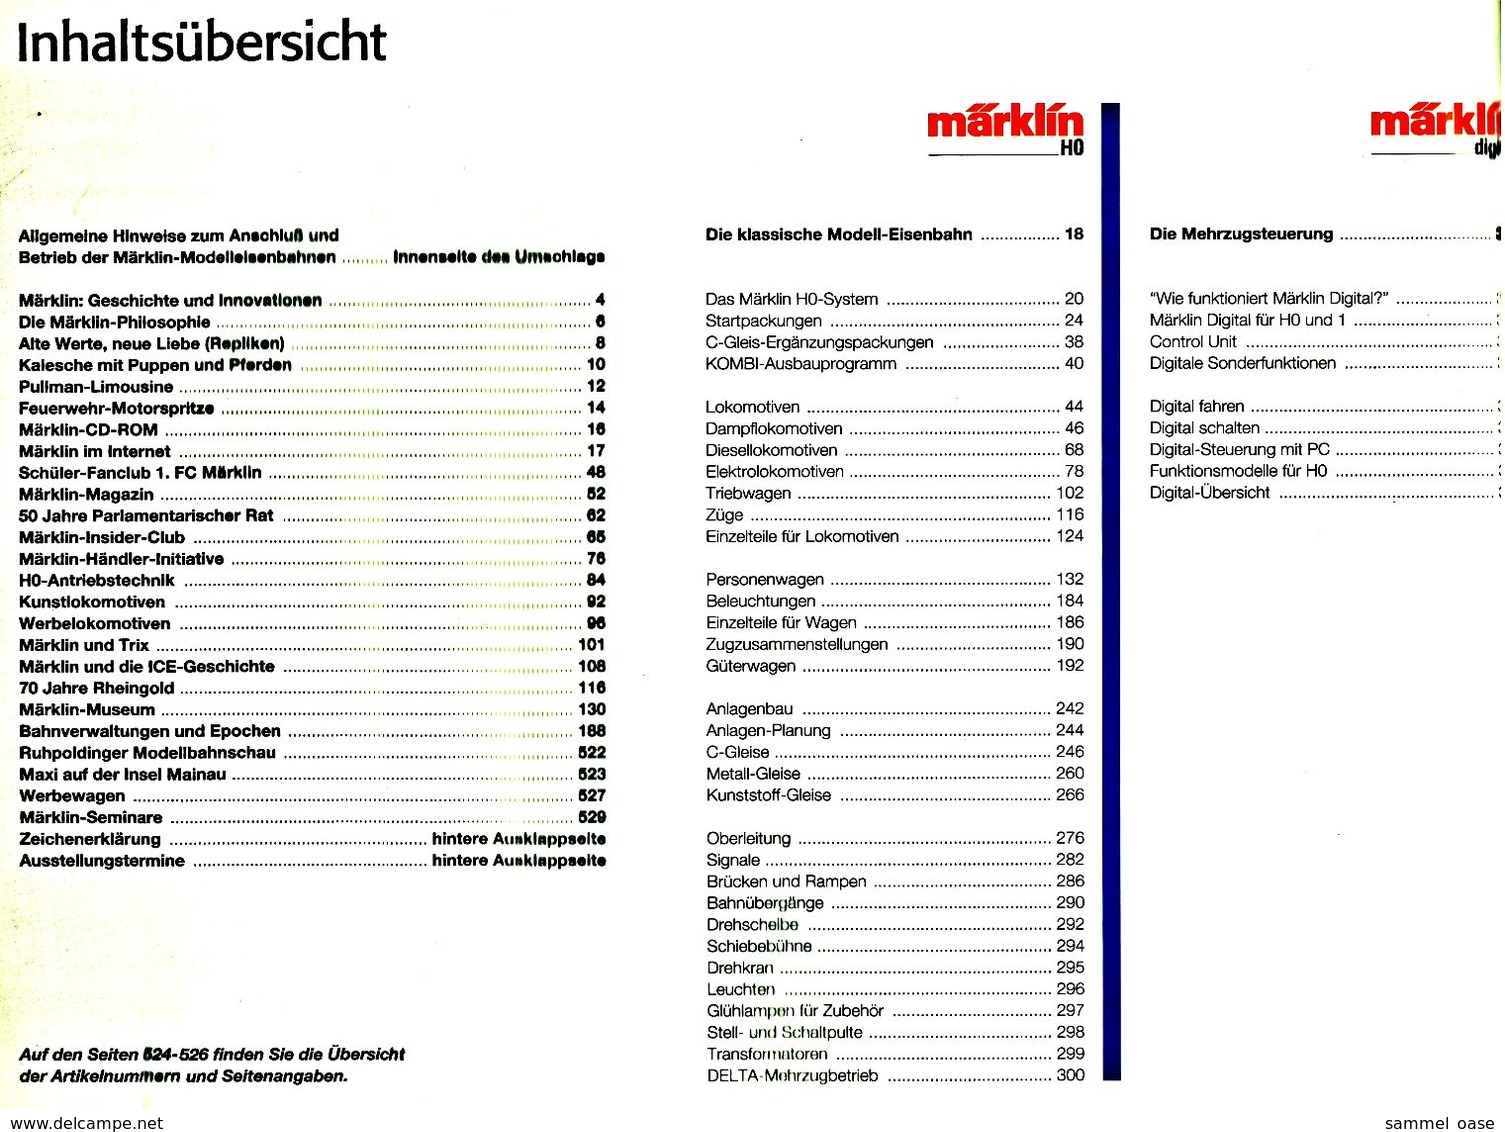 Märklin Katalog Gesammtprogramm 1998/99 DI  -  528 Seiten - Allemand